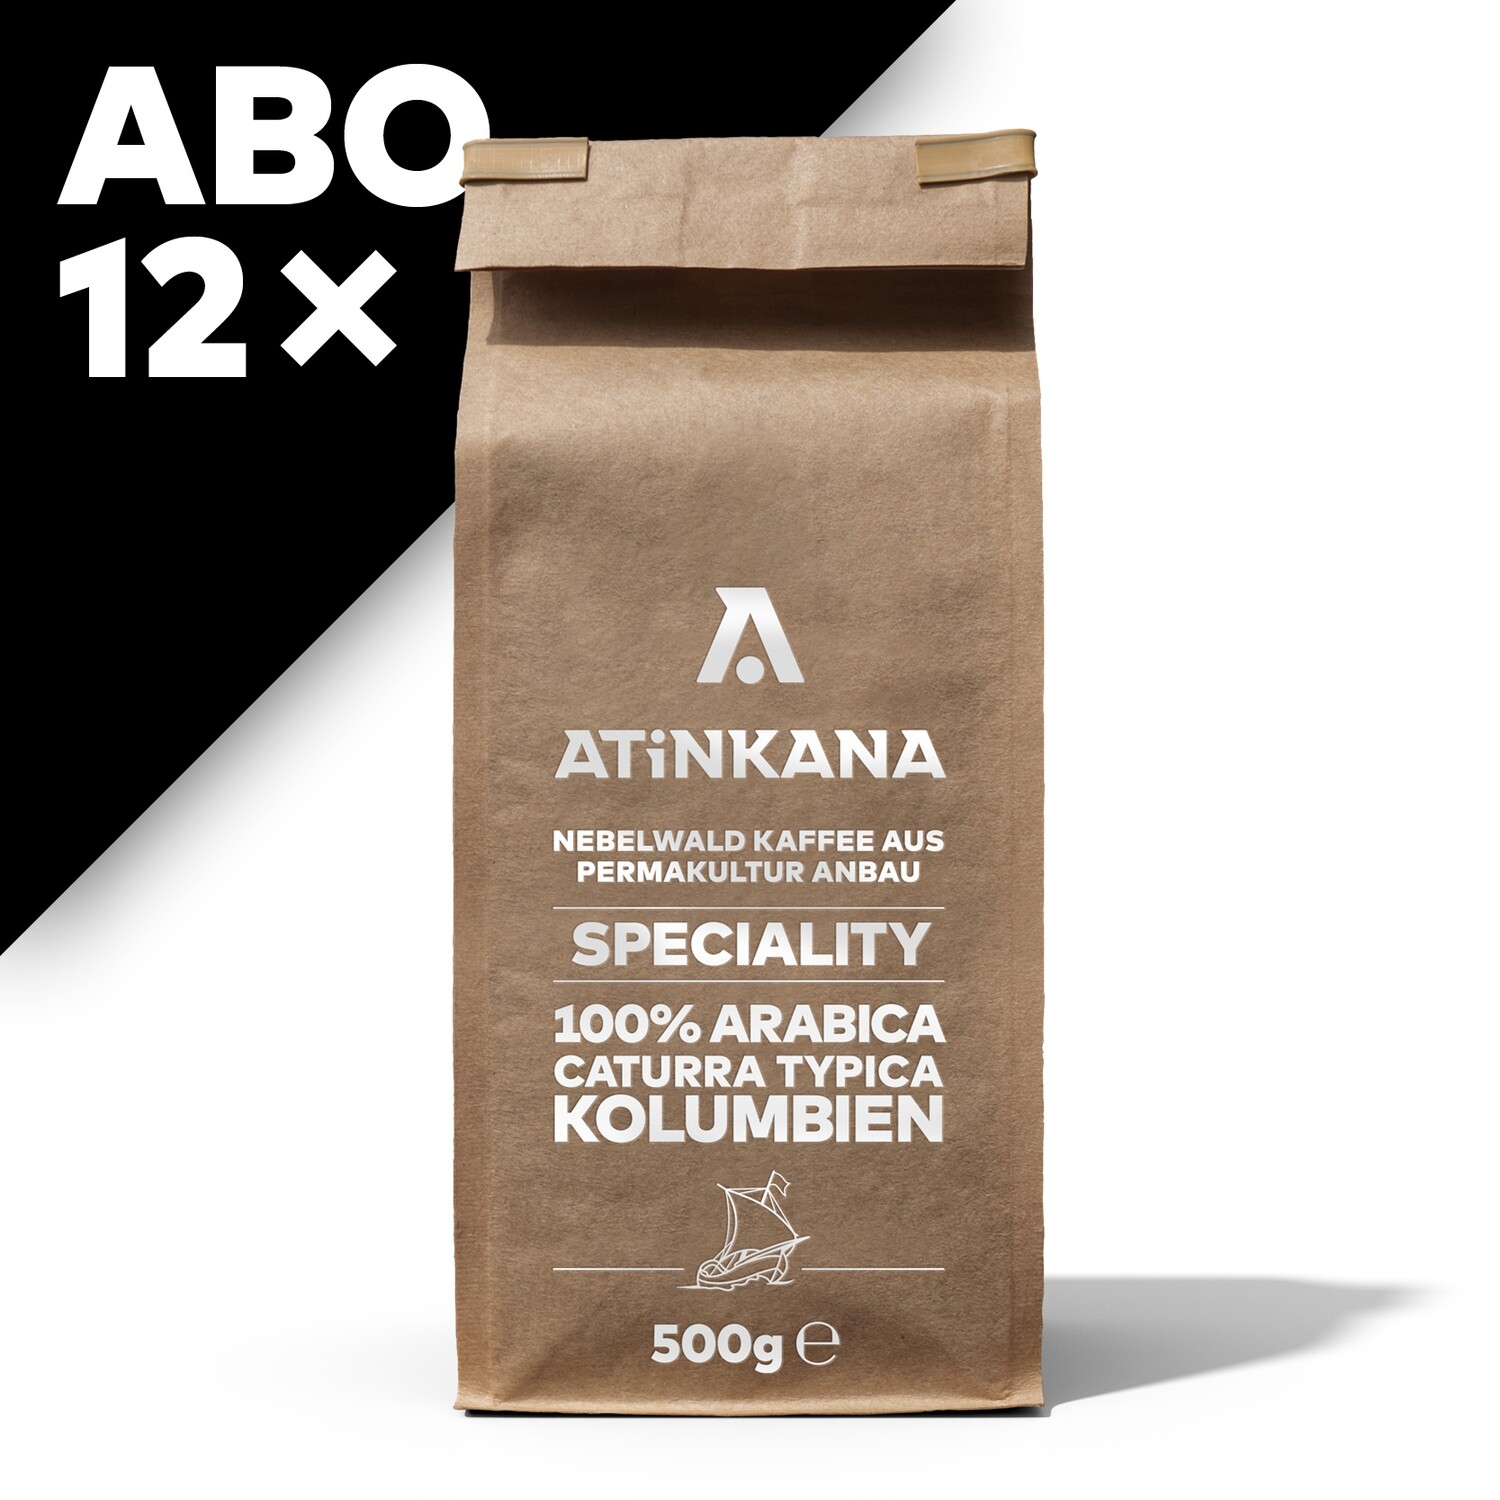 12 × Atinkana Kaffee 500g Speciality ABO